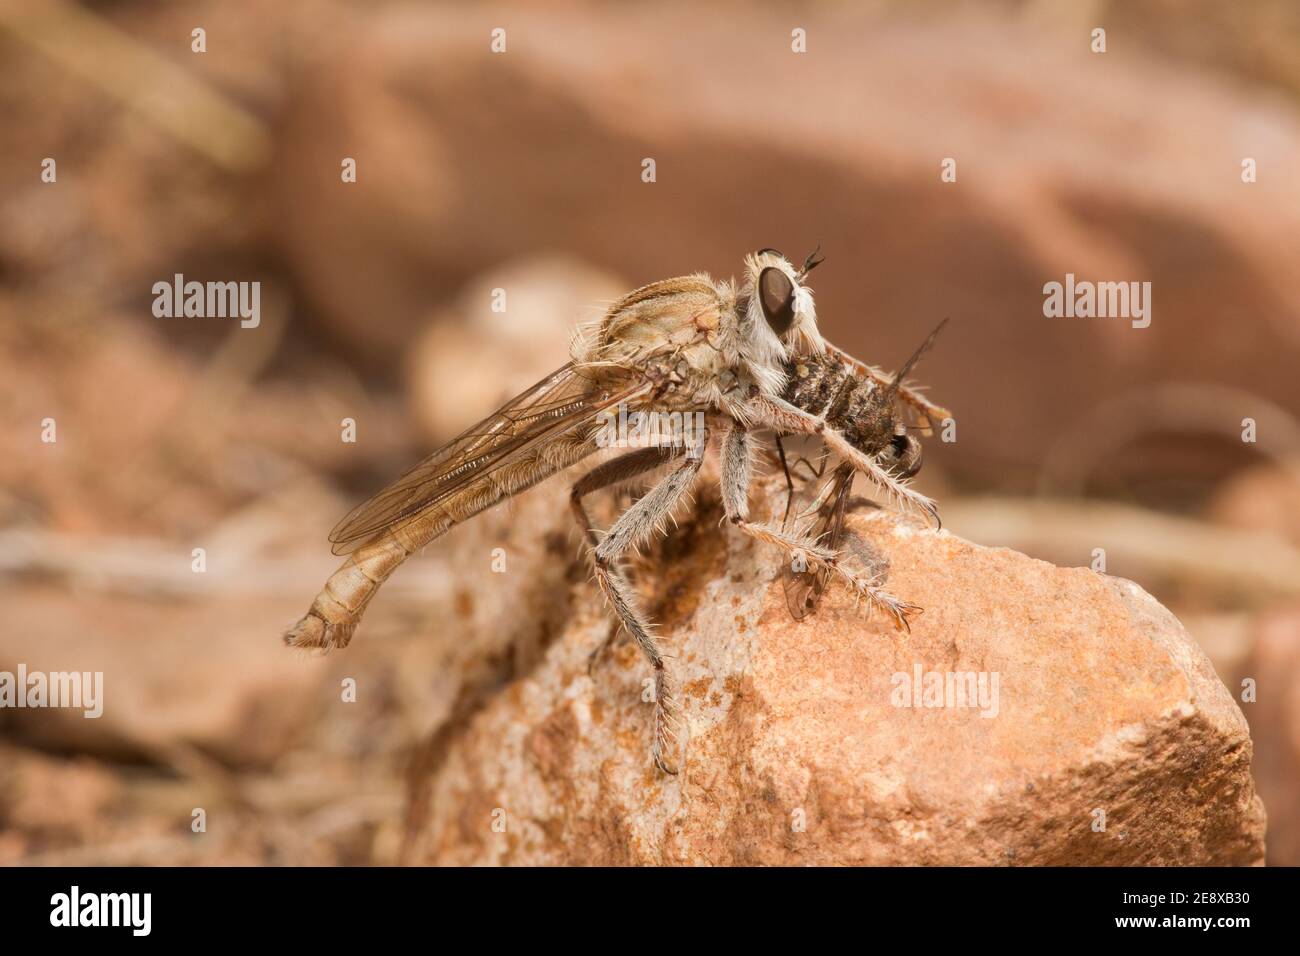 Robber Fly male, Proctacanthella exquisita, Asilidae. Feeding on beefly, Bombyliidae. Stock Photo